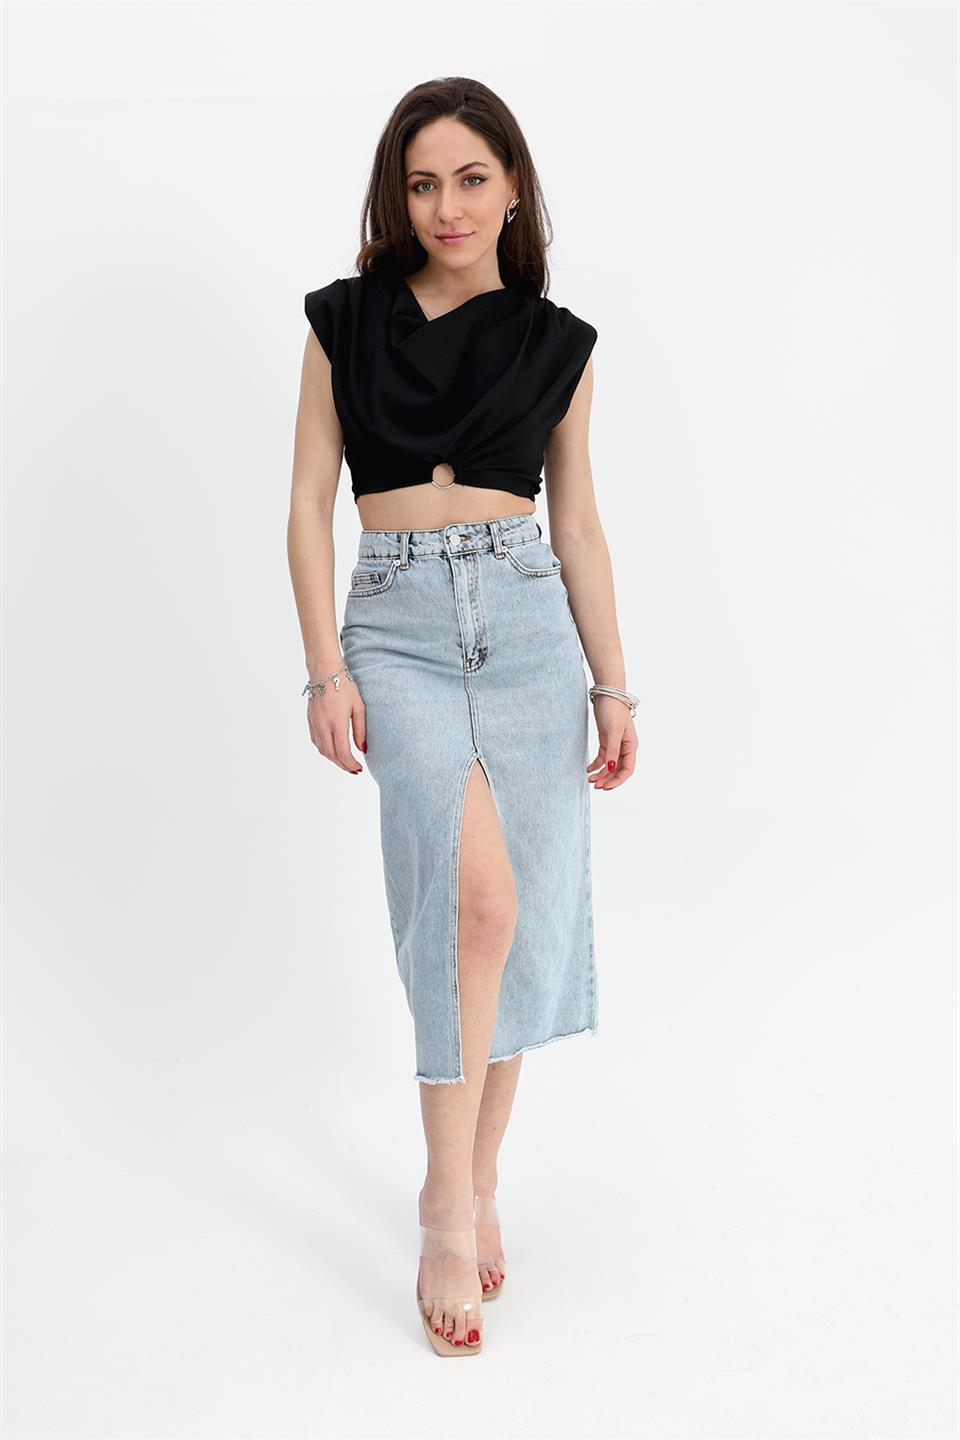 Women's Denim Skirt Front Slit Skirt Tasseled - Blue - STREET MODE ™